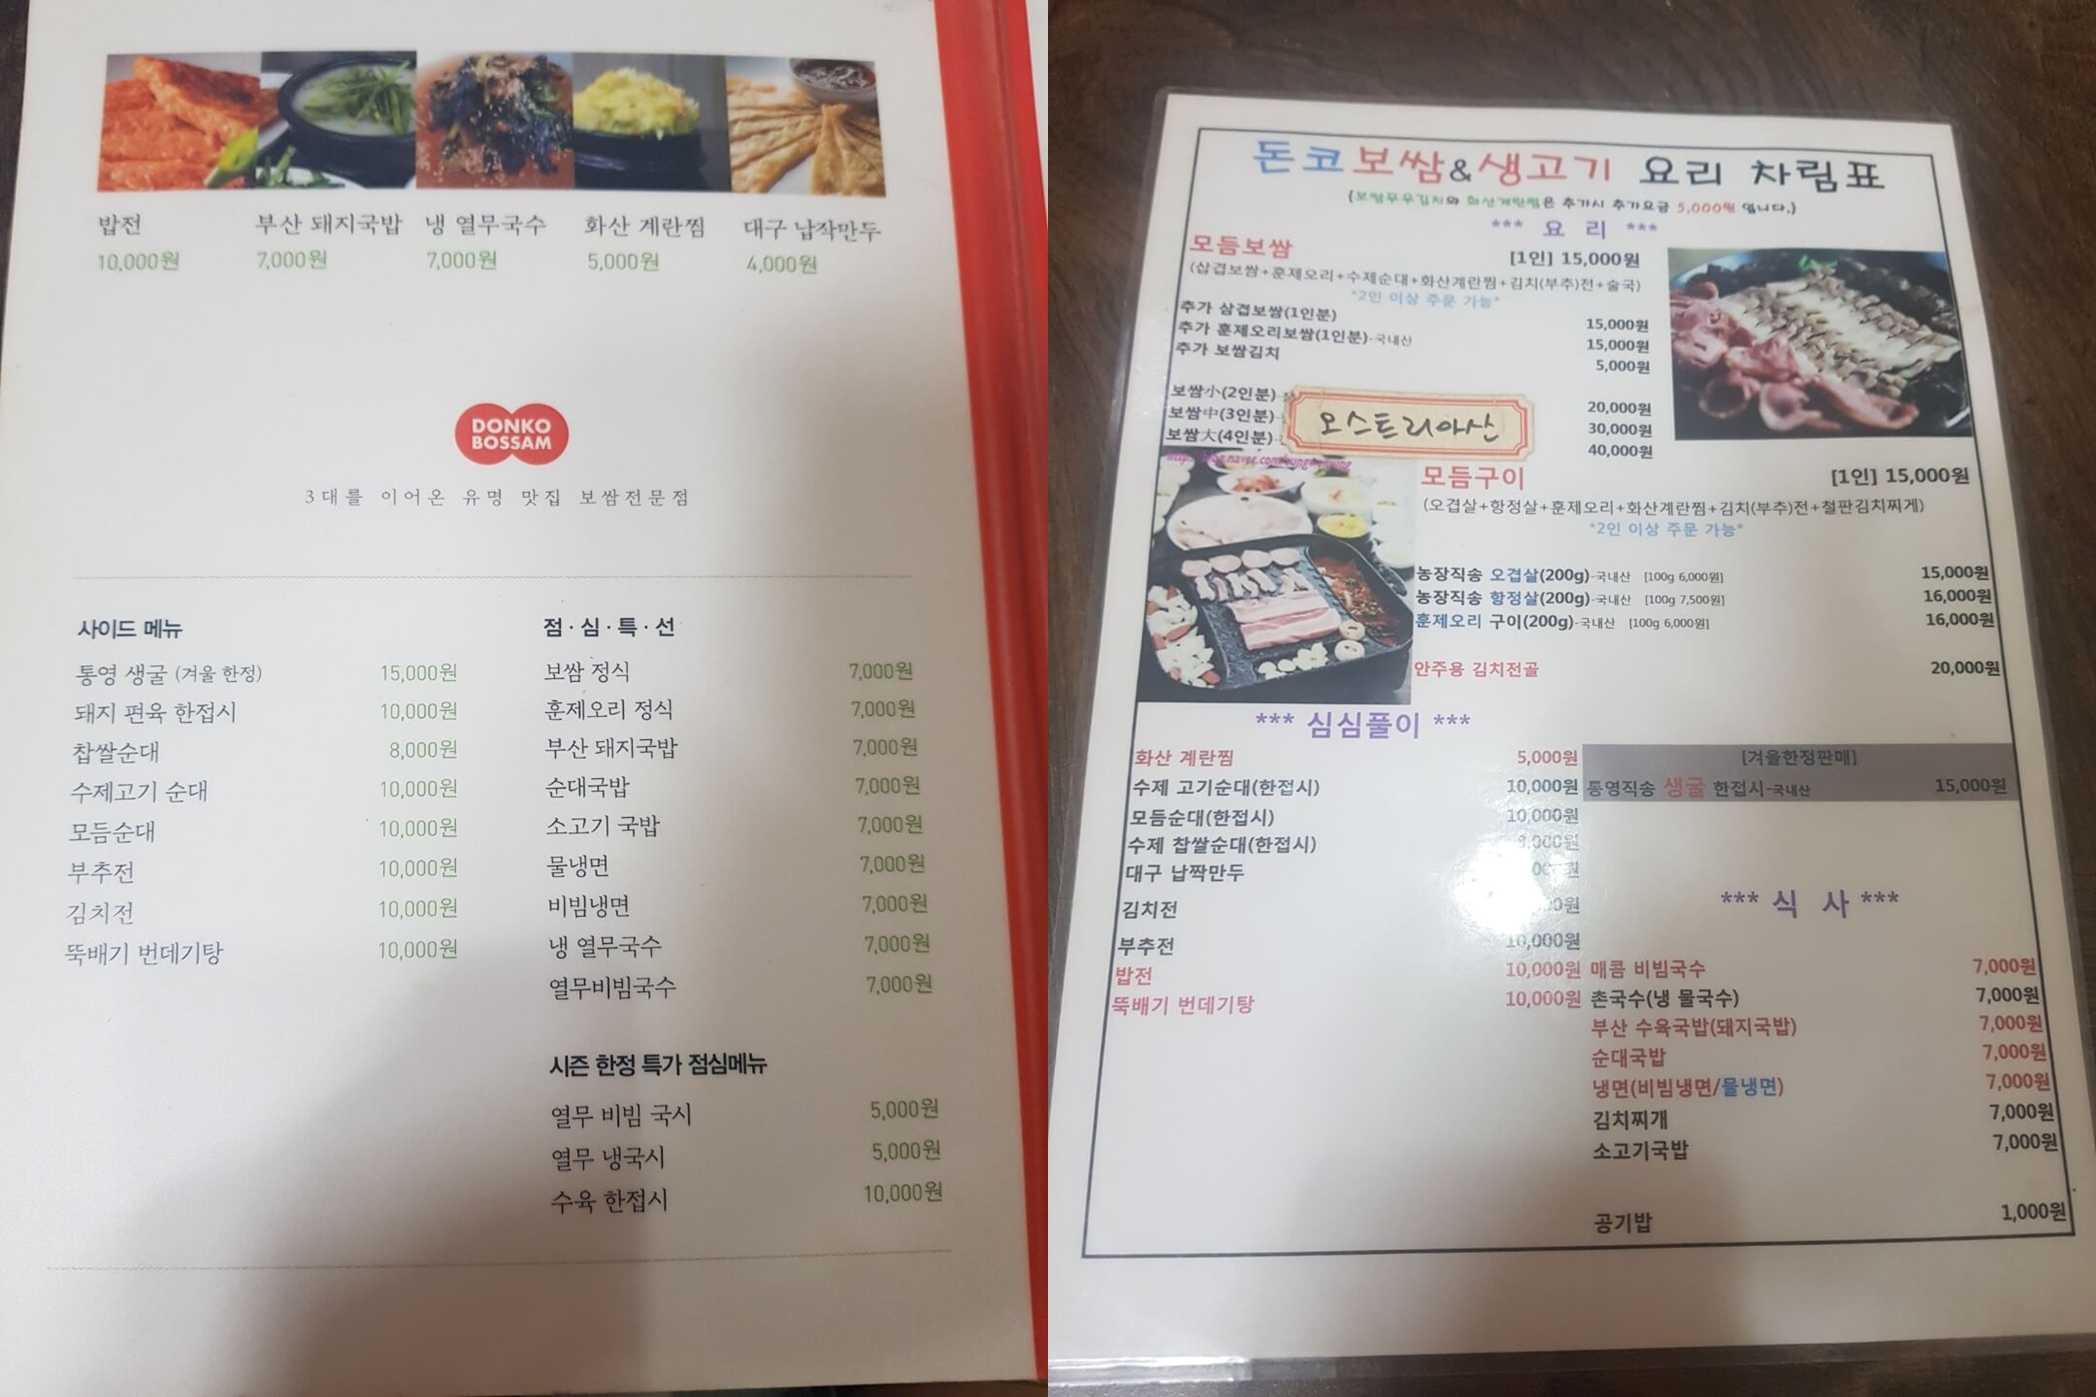 마포구 연남동 맛집 돈코보쌈&생고기 메뉴 리뷰 보쌈 맛집